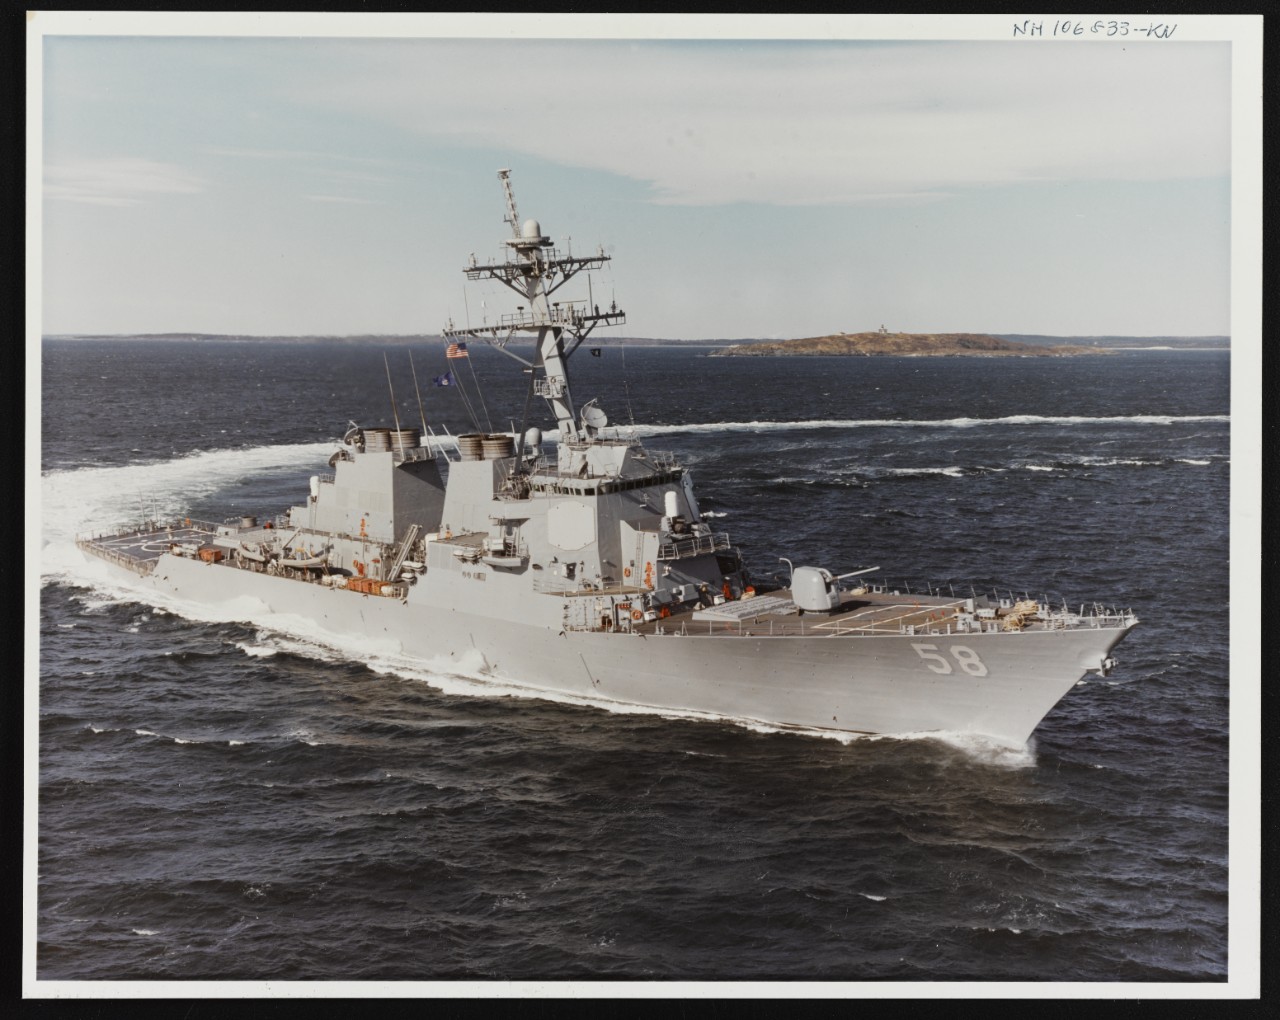 Photo # NH 106833-KN USS Laboon